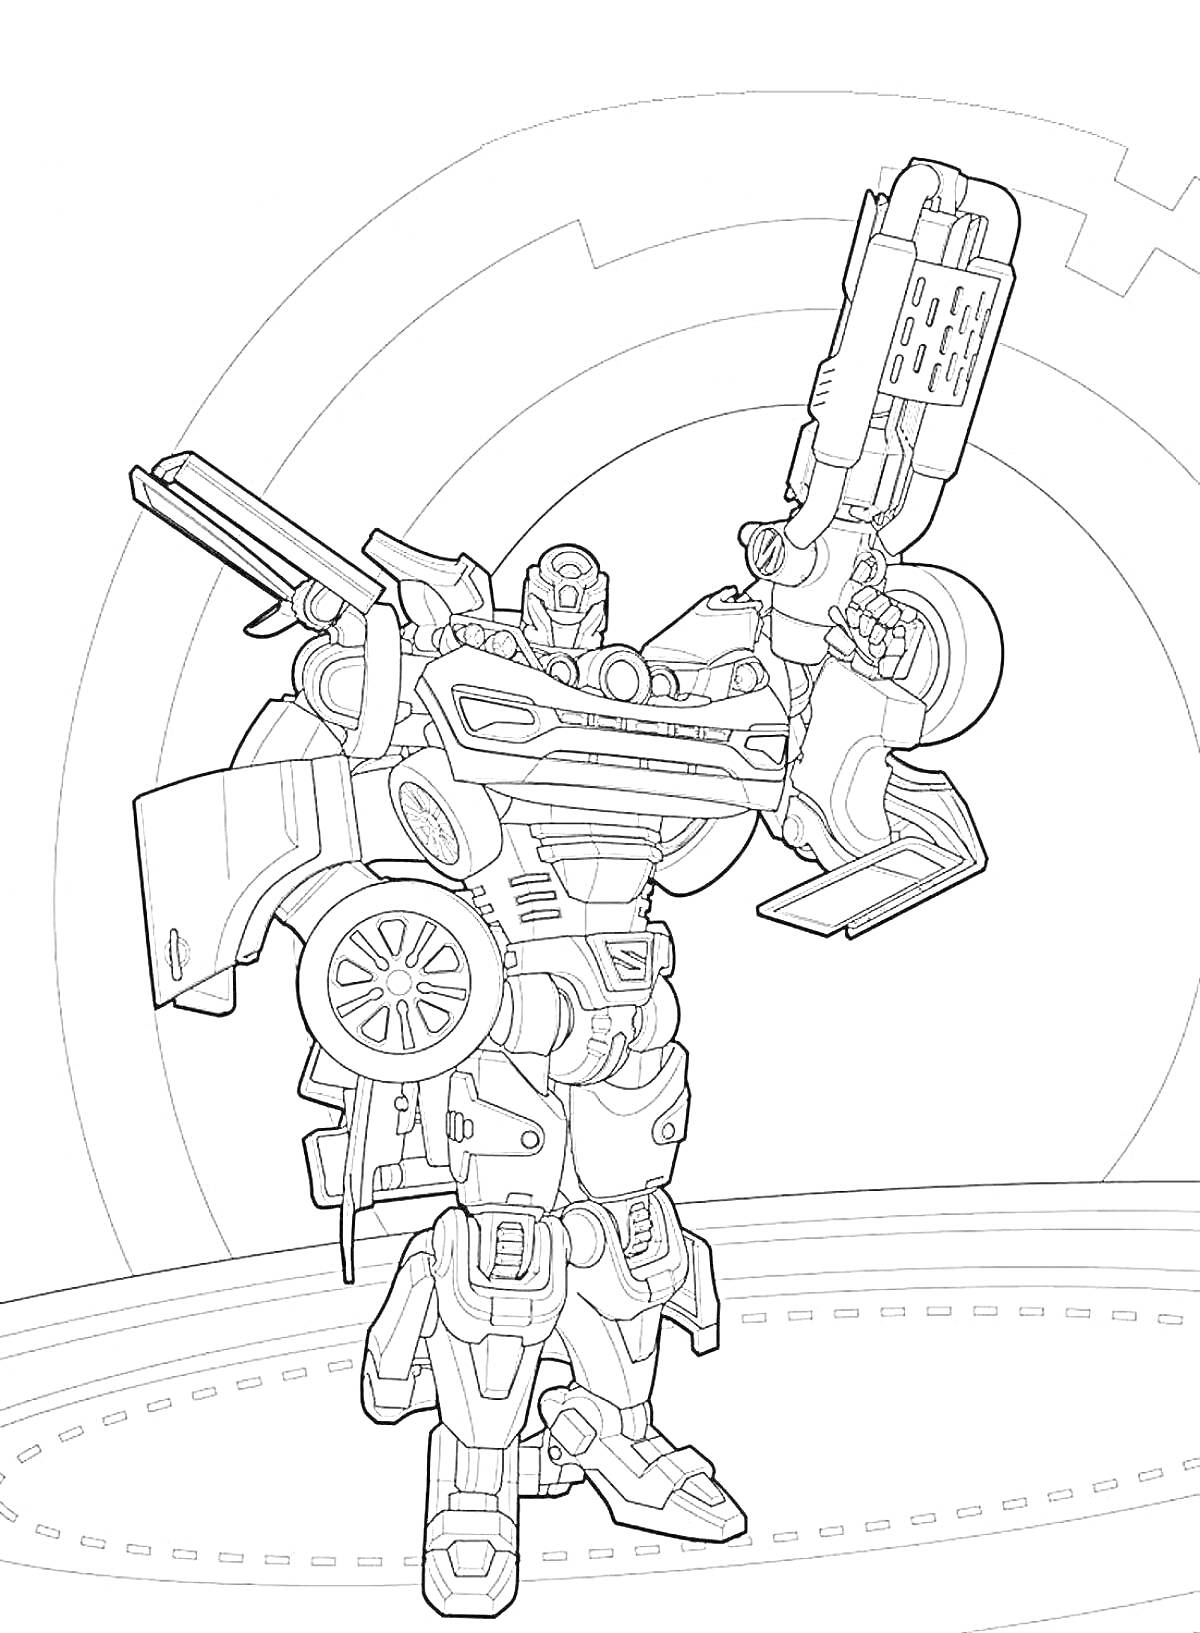 Раскраска Робот-тиран с оружием и автомобильными элементами на фоне круговых узоров